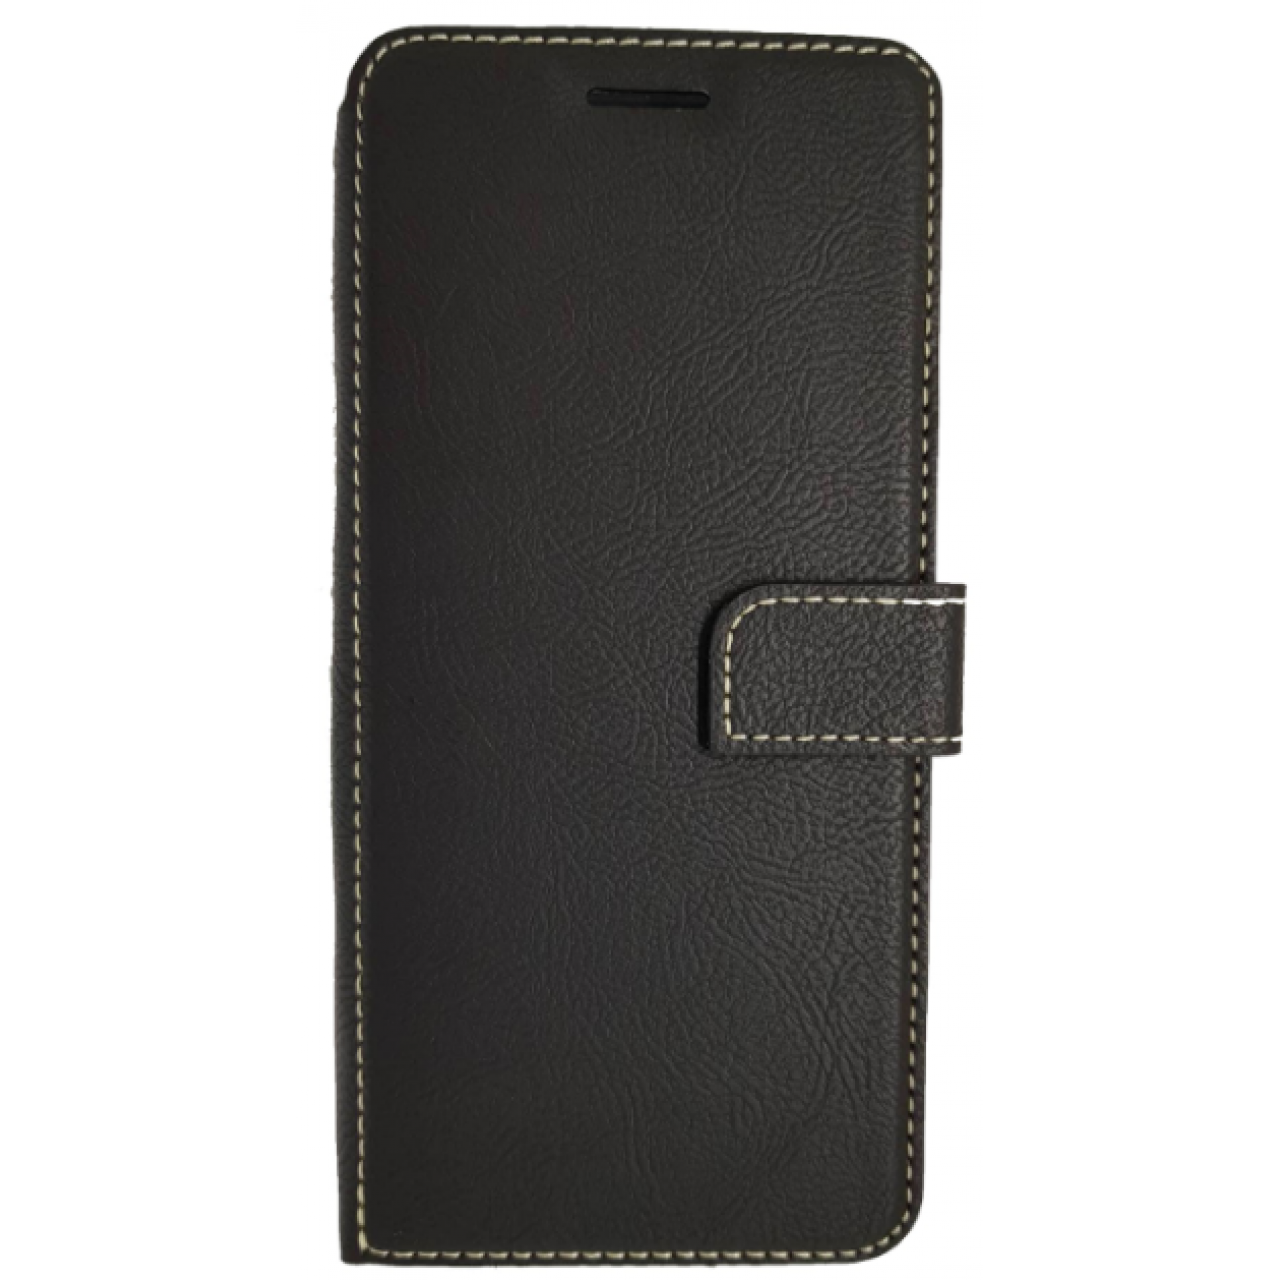 Θήκη Samsung Galaxy S9 Plus (G965F) Star-Case ® Πορτοφόλι Soul - 3587 - Μαύρο